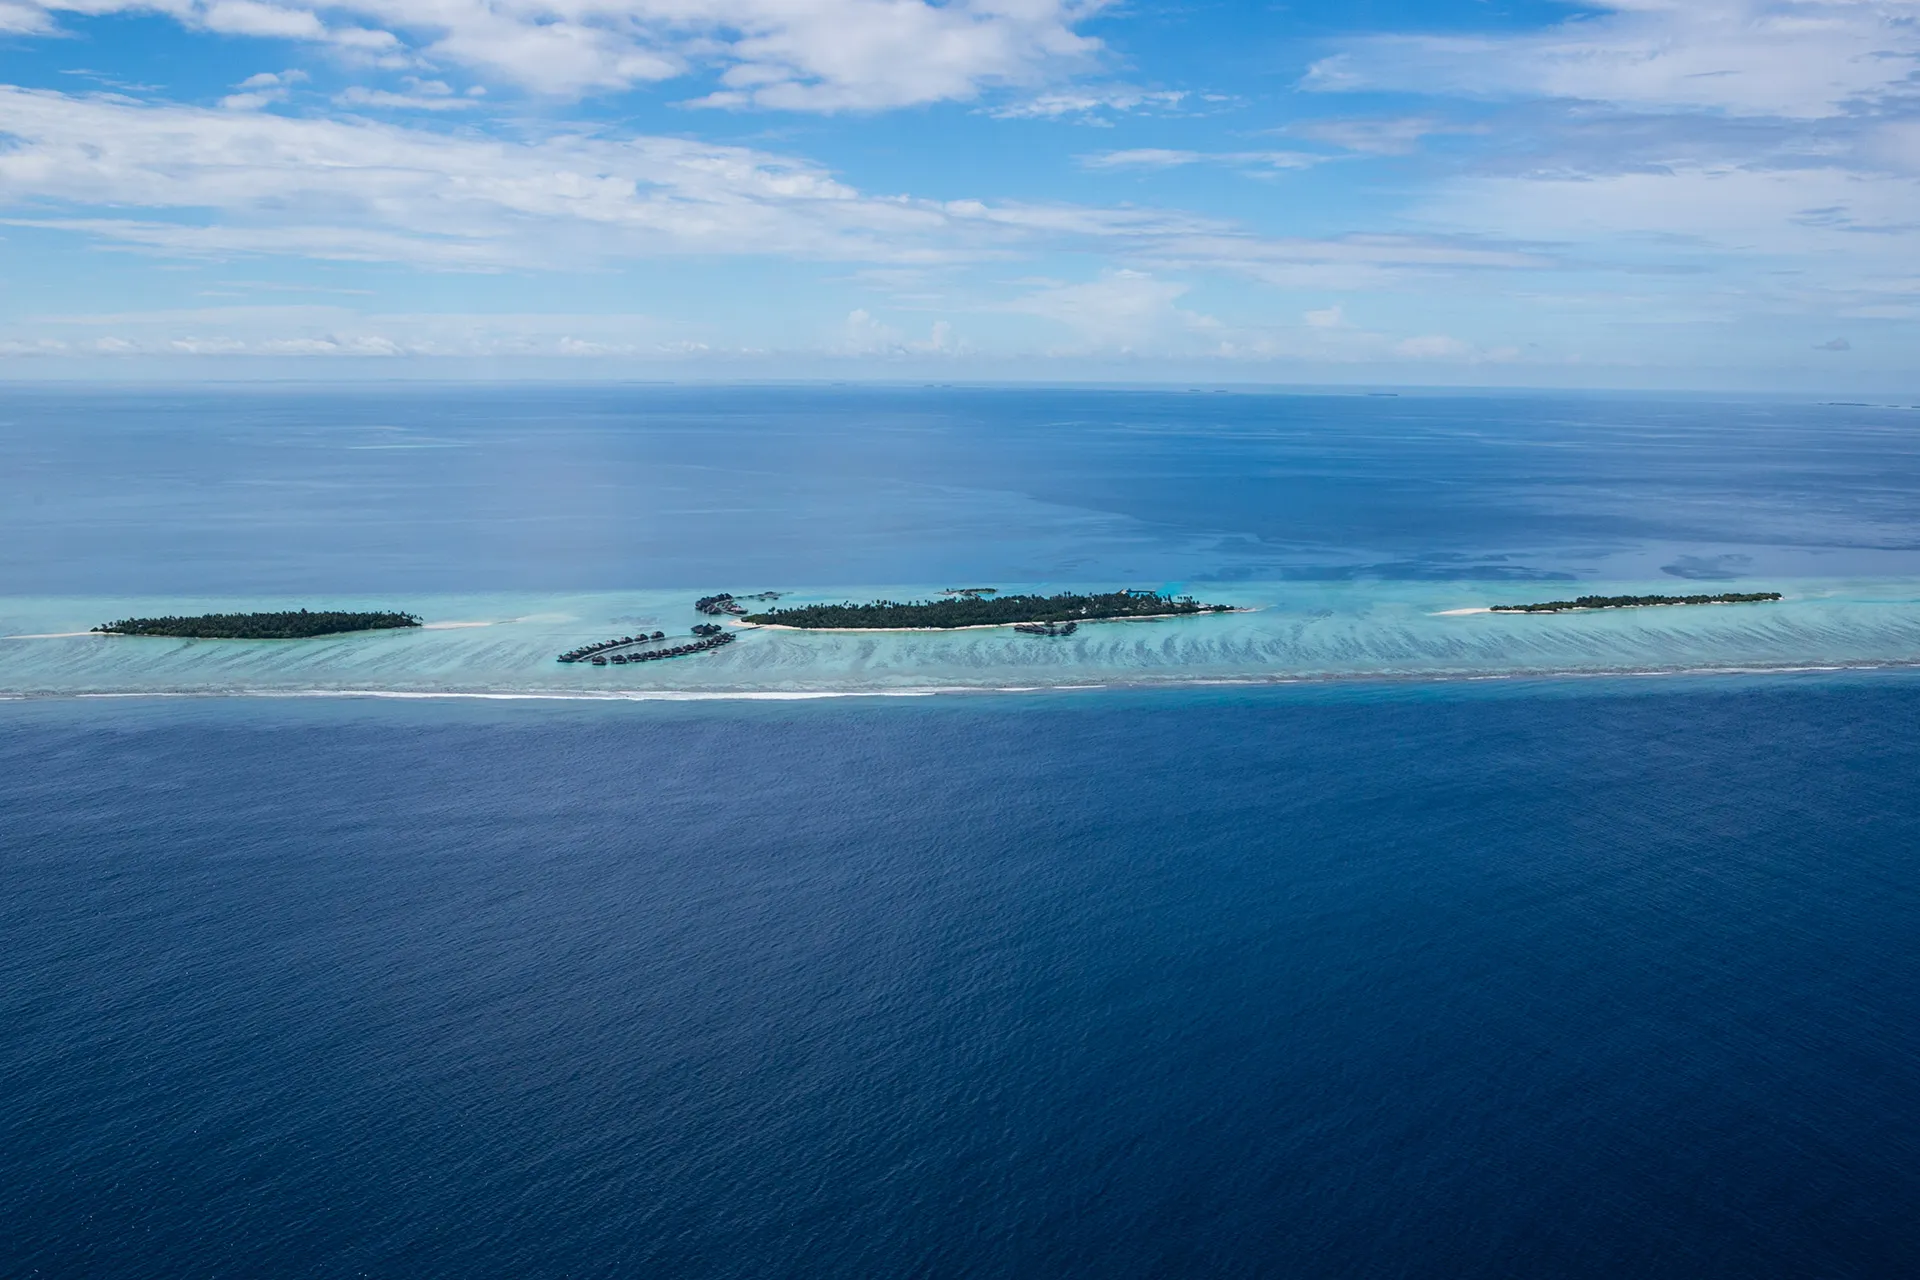 Maledivische Insel aus Sicht eines Wasserflugzeugs